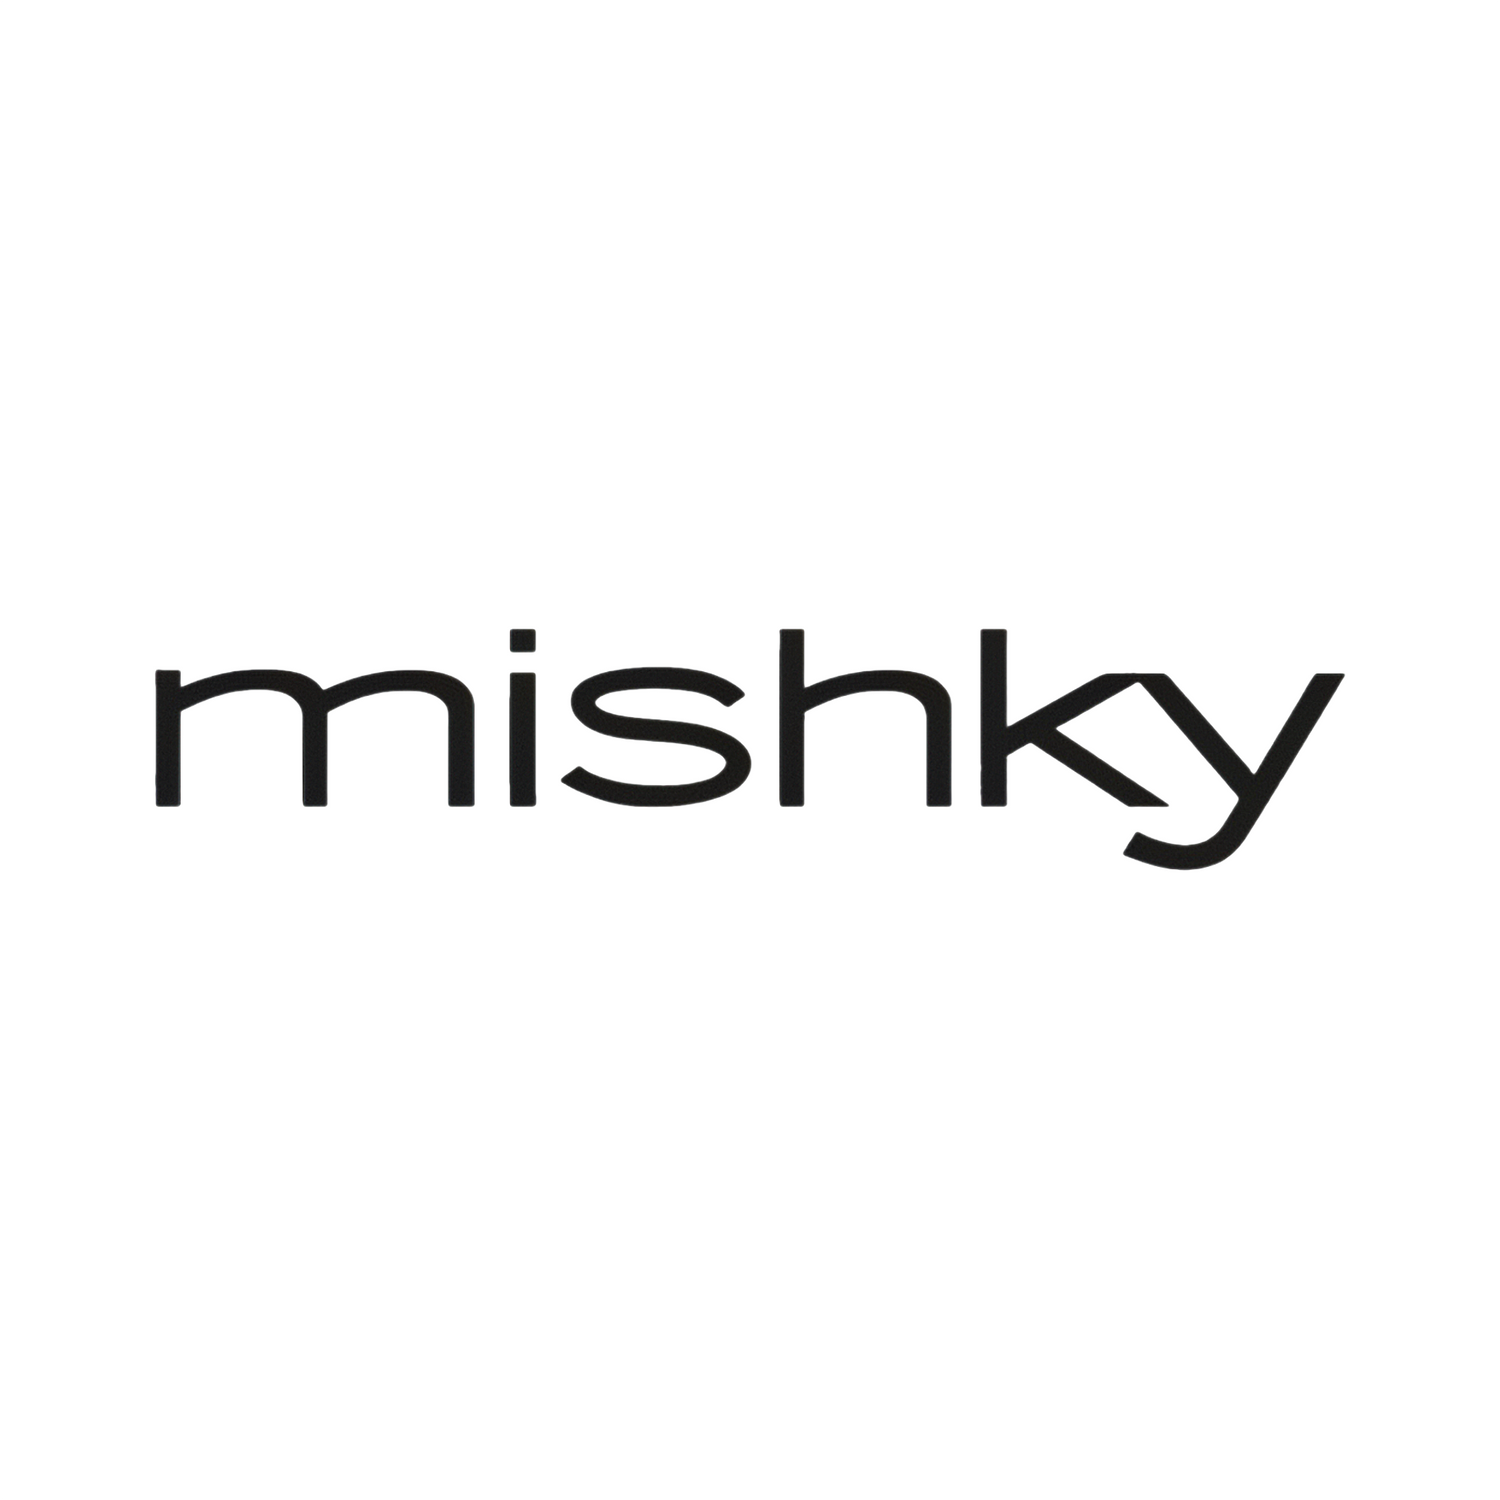 Mishky